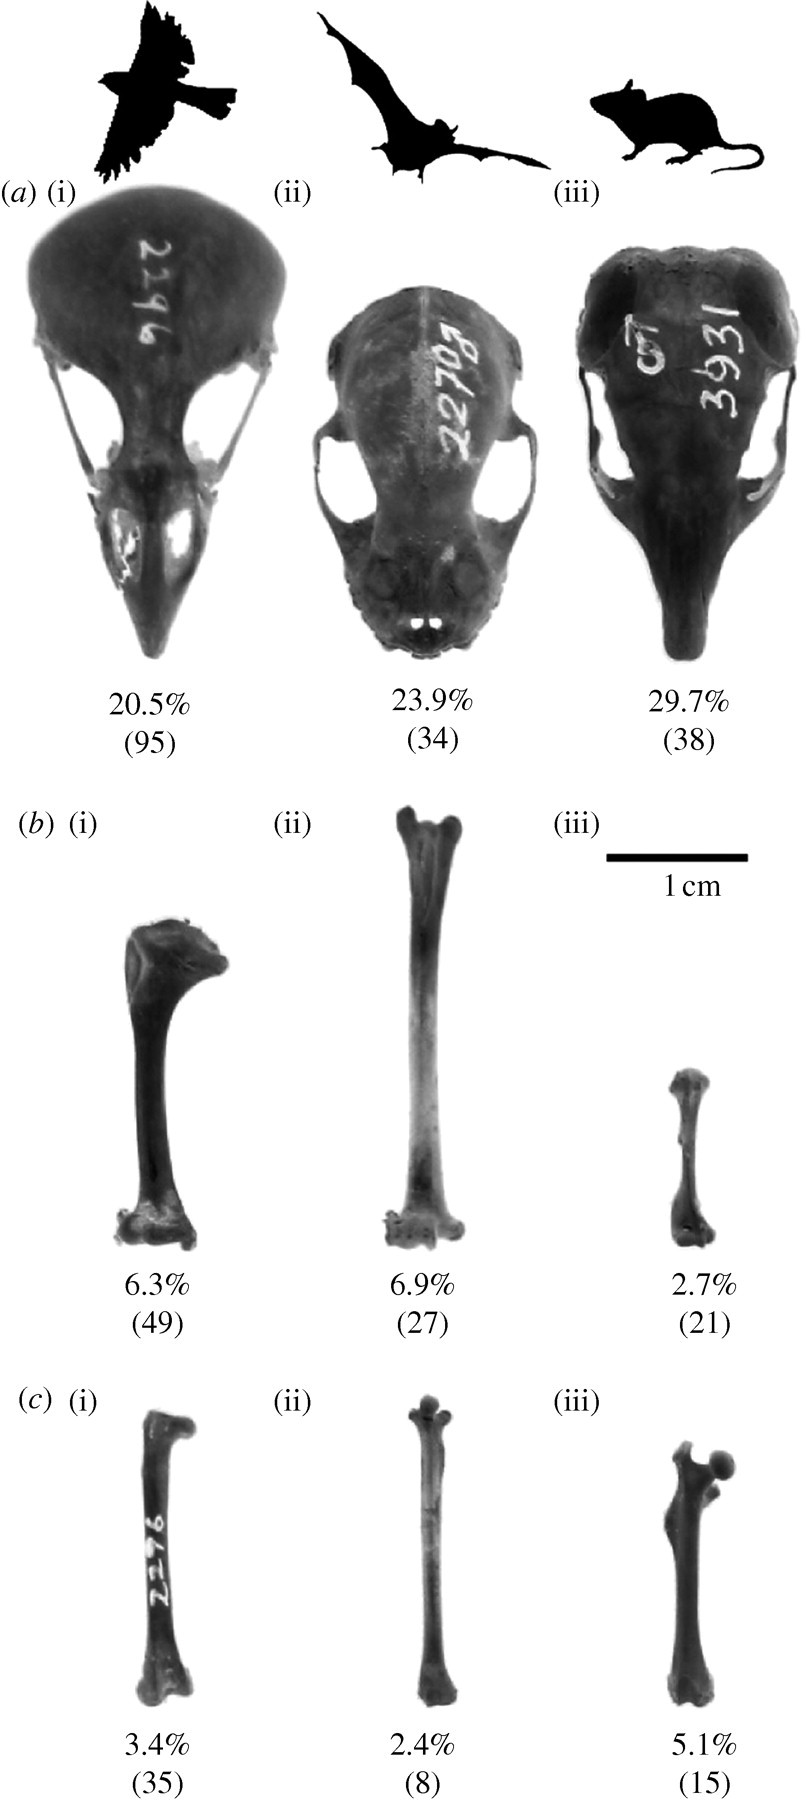 Do bird bones weigh less than other bones?